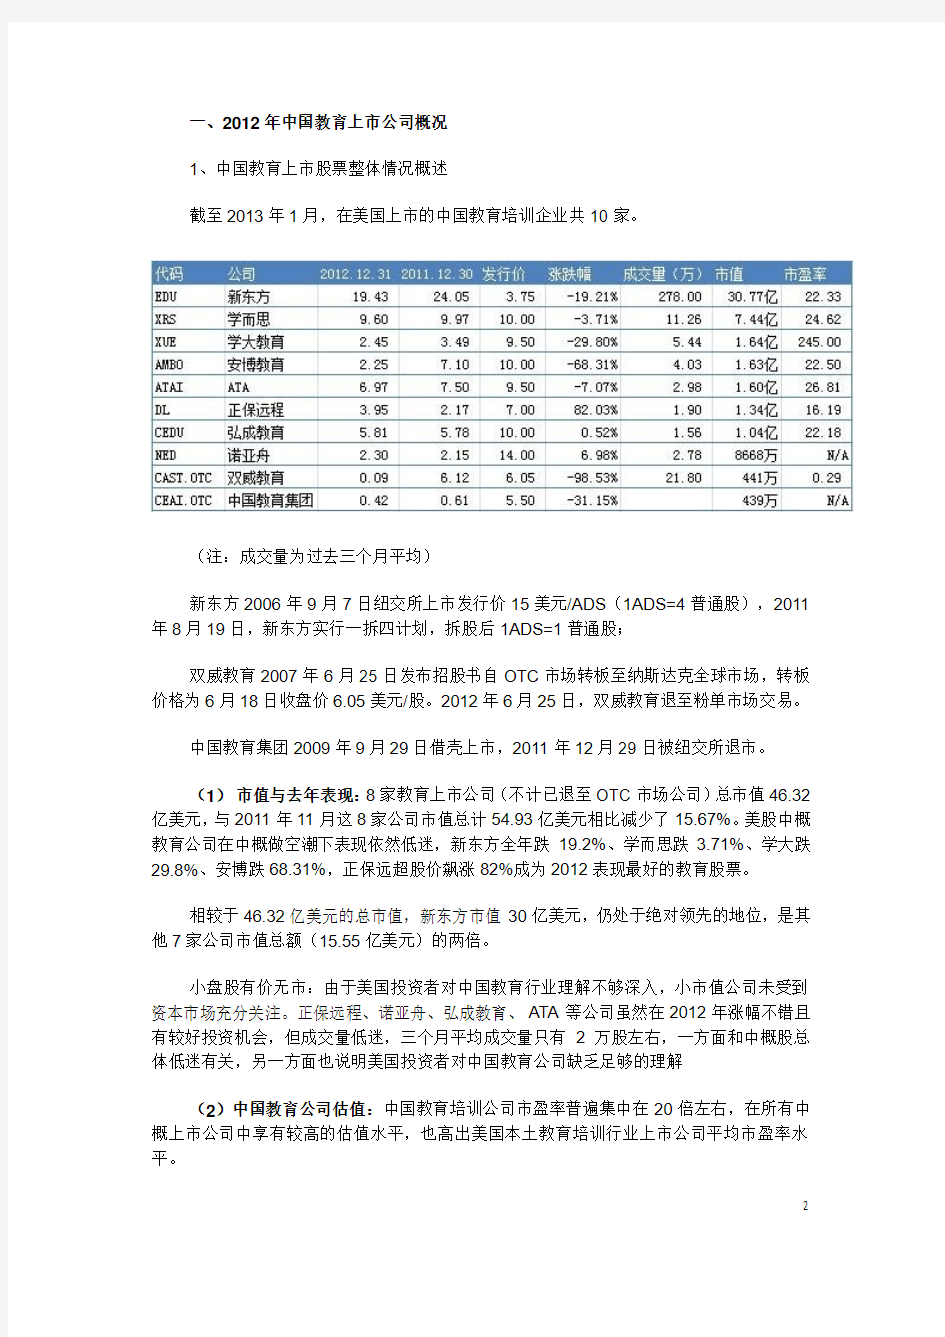 2012年中国教育行业上市公司分析报告(i美股联合搜狐教育联合推出)